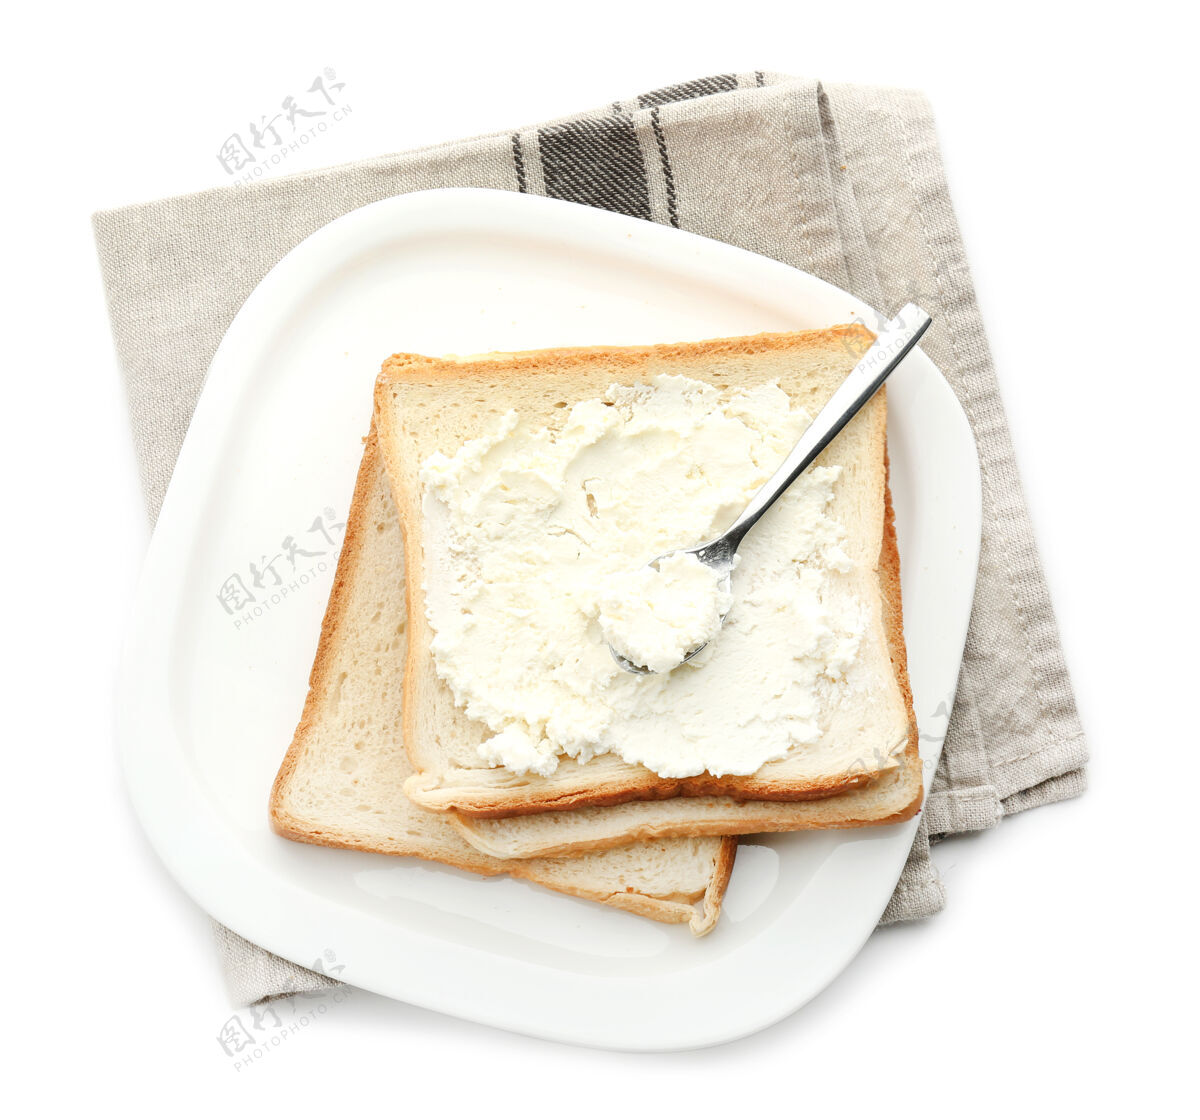 切片盘子里放着美味的烤面包和奶酪 单独放在白色盘子里早餐食物烹饪